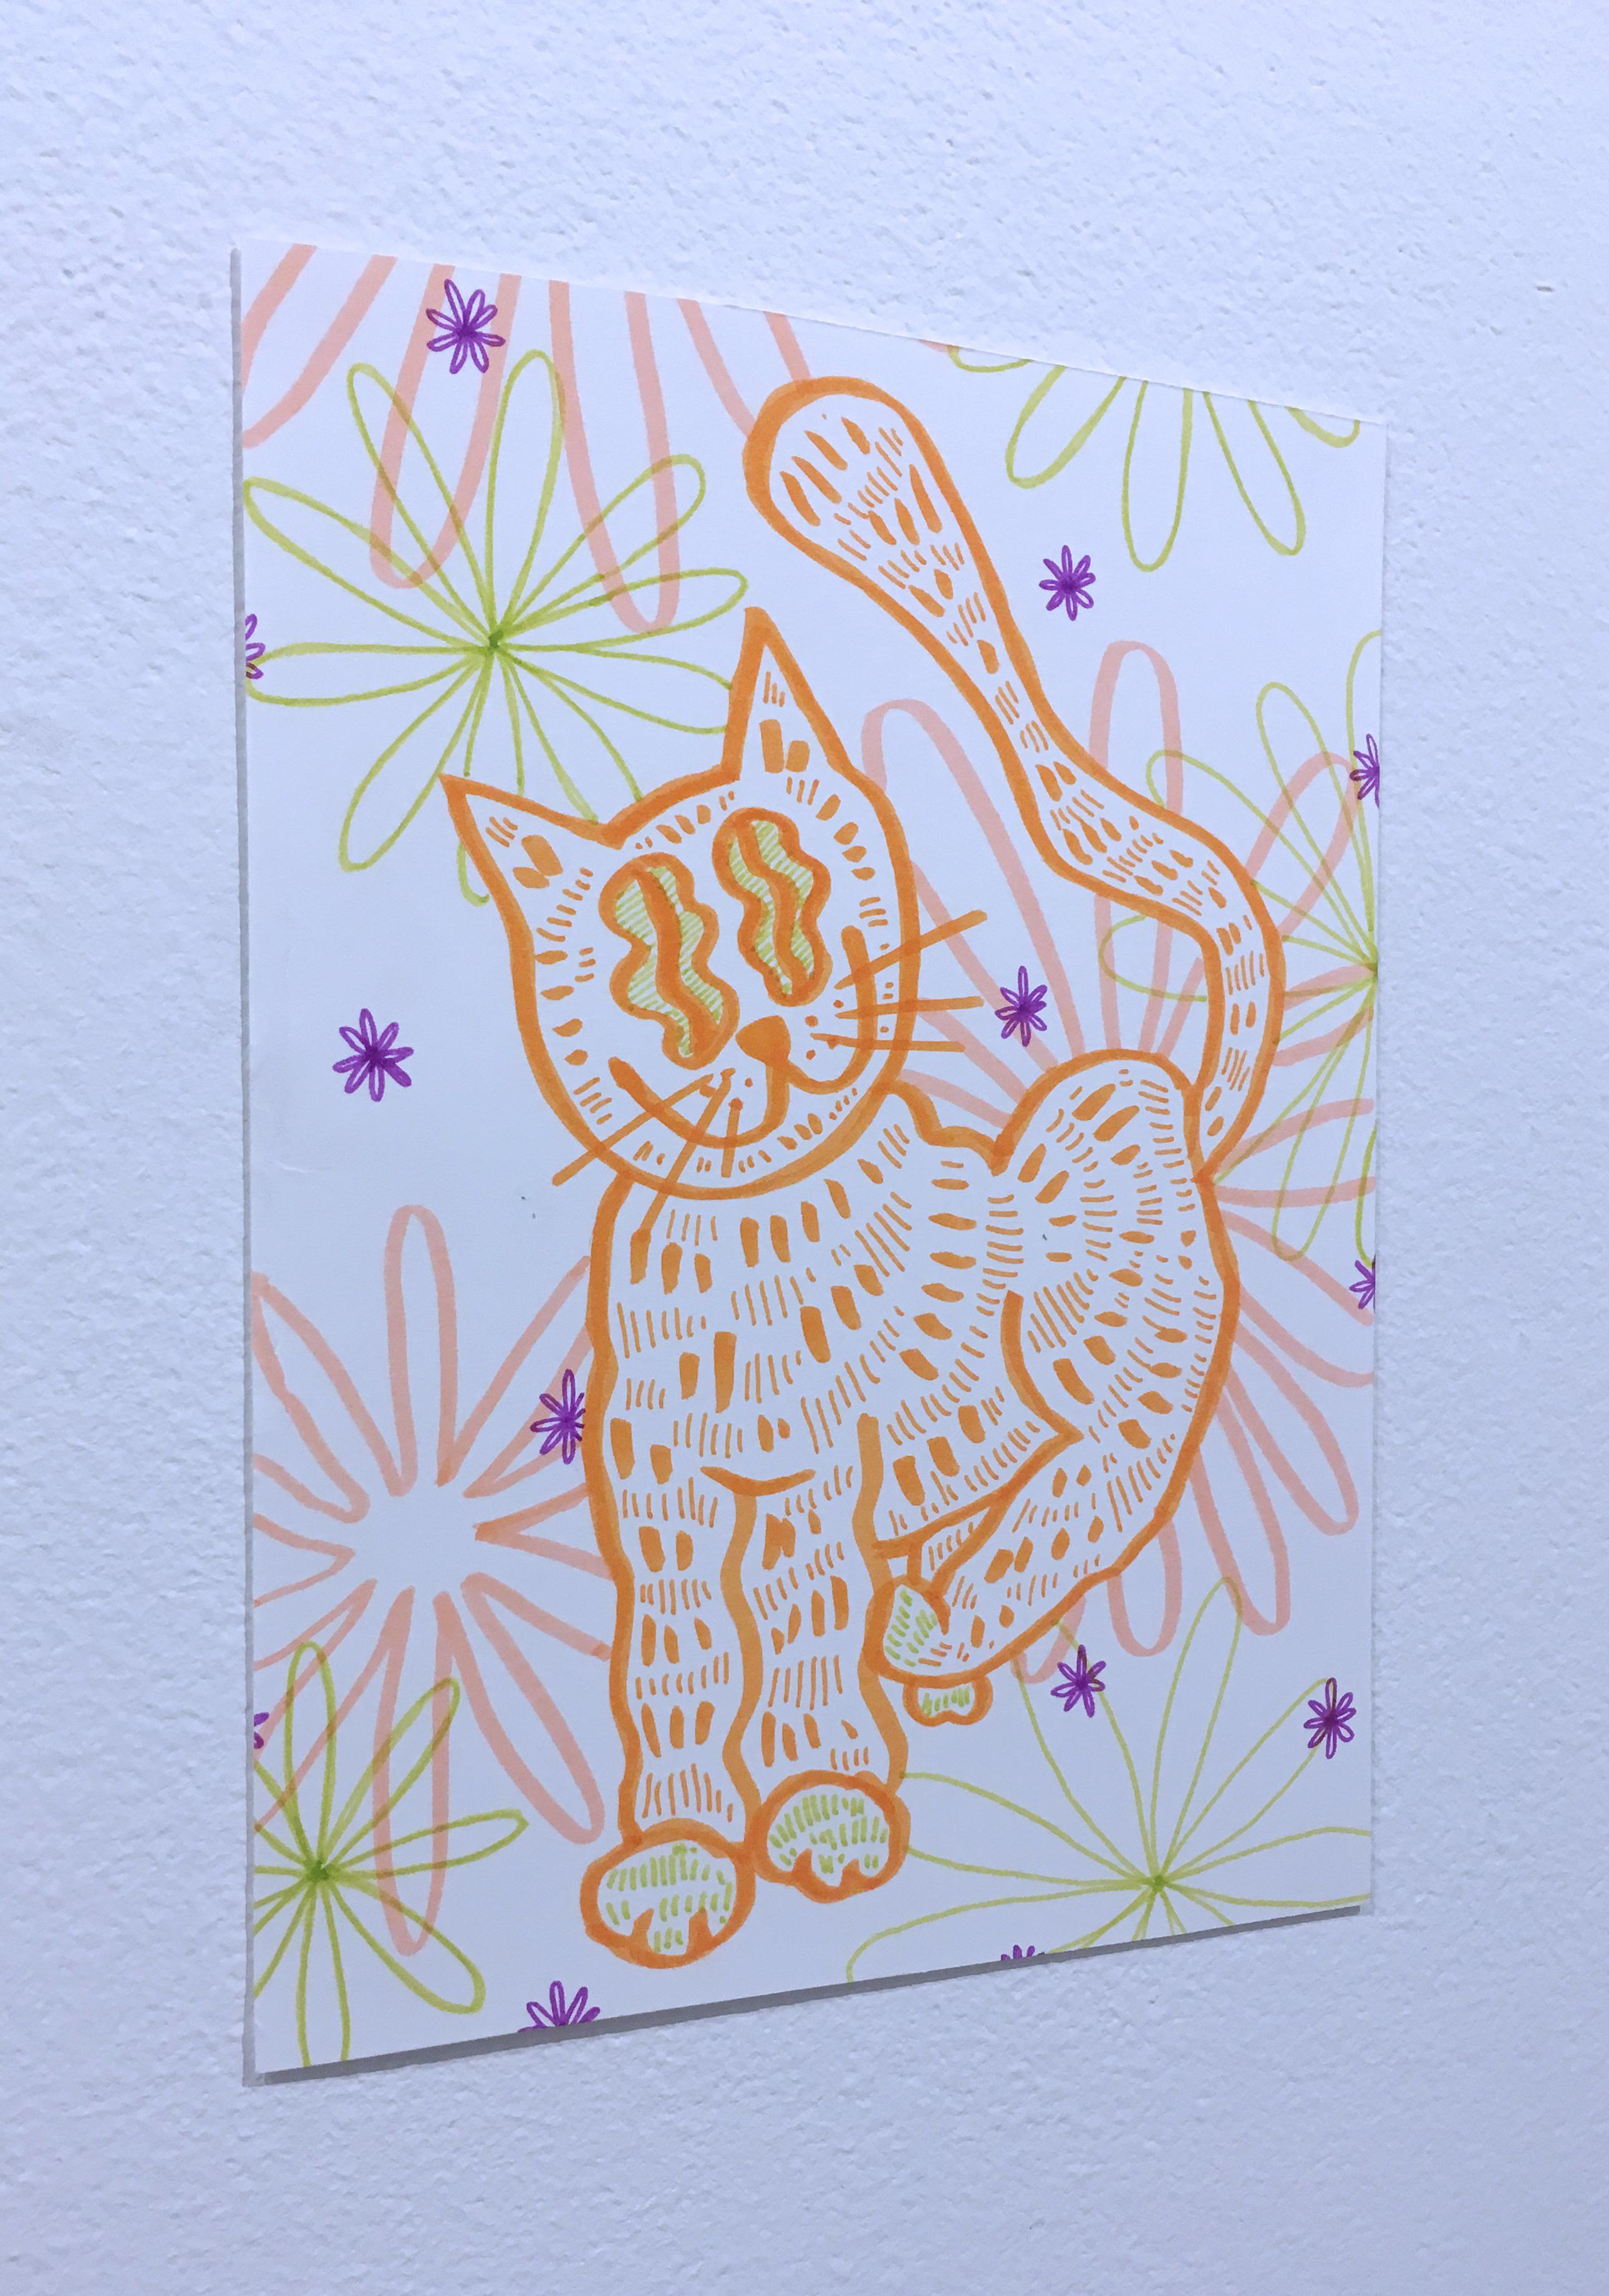 Soft and Fuzzy, dessin sur papier à l'aquarelle, chat avec fleurs, motif graphique ondulé - Contemporain Art par SarahGrace